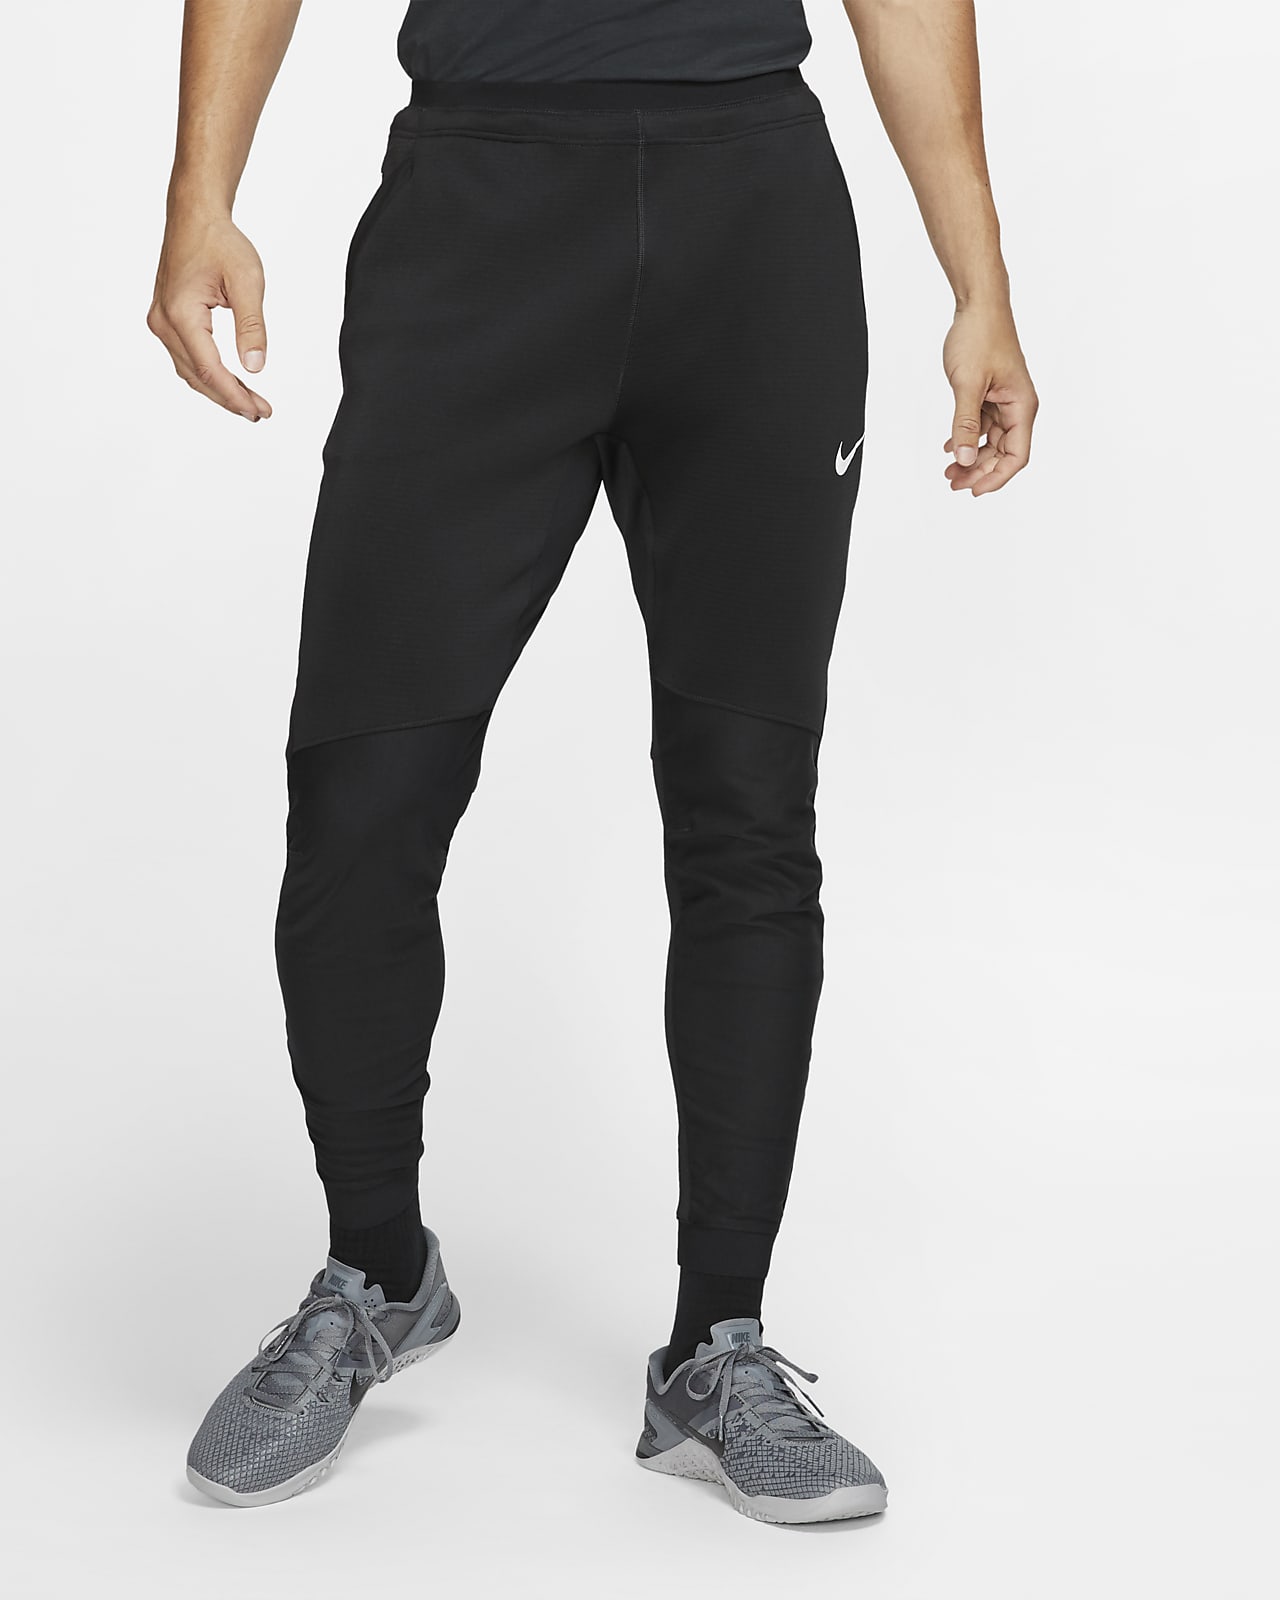 Nike Pro Men's Trousers. Nike IN